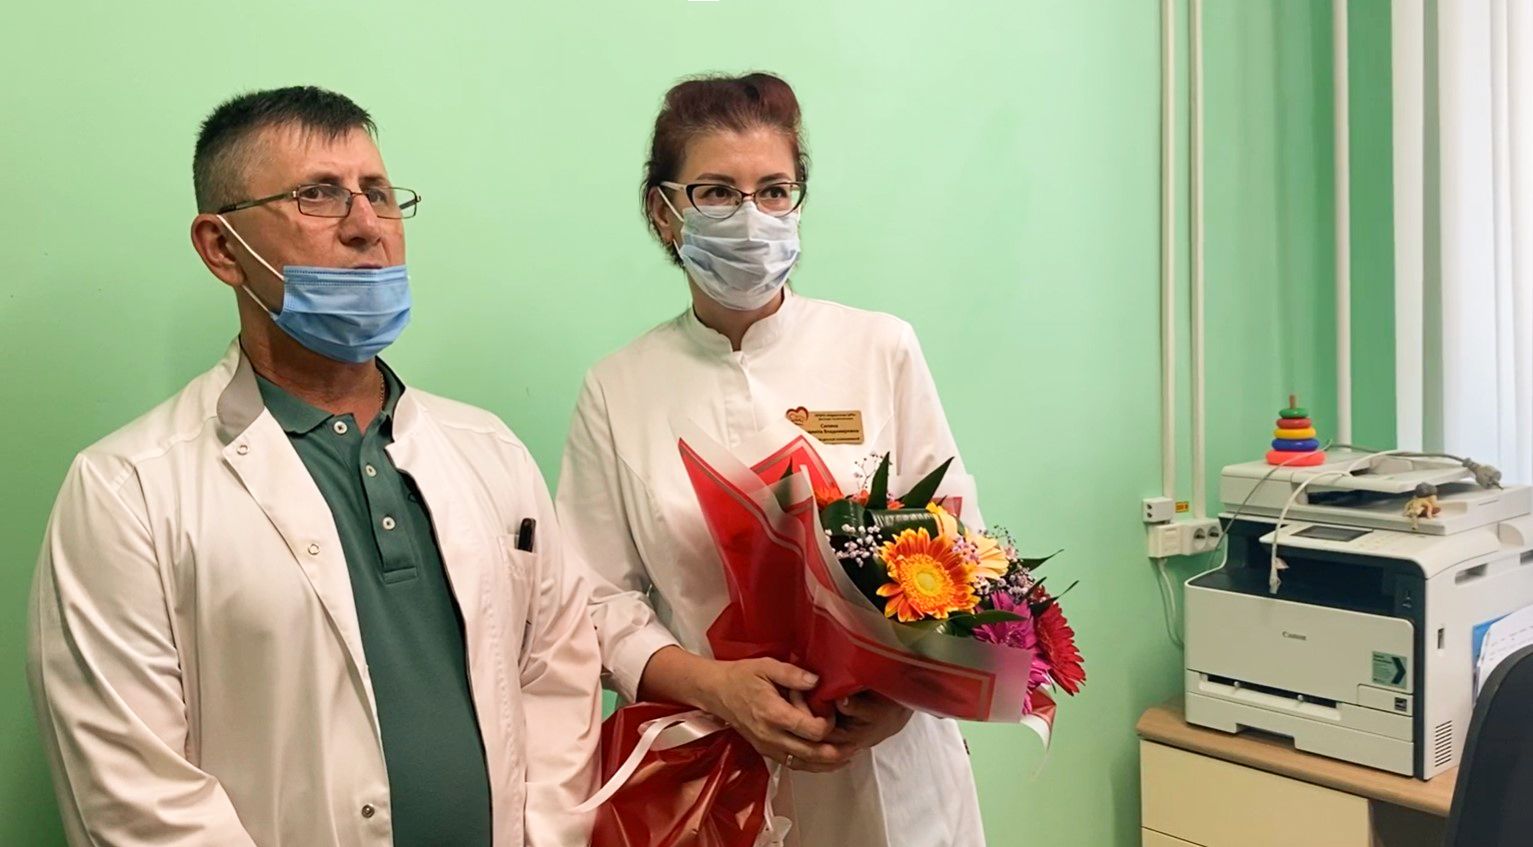 Не ушли из медицины даже в 90-е годы: семья врачей из Нерехты отмечает 25-летие свадьбы